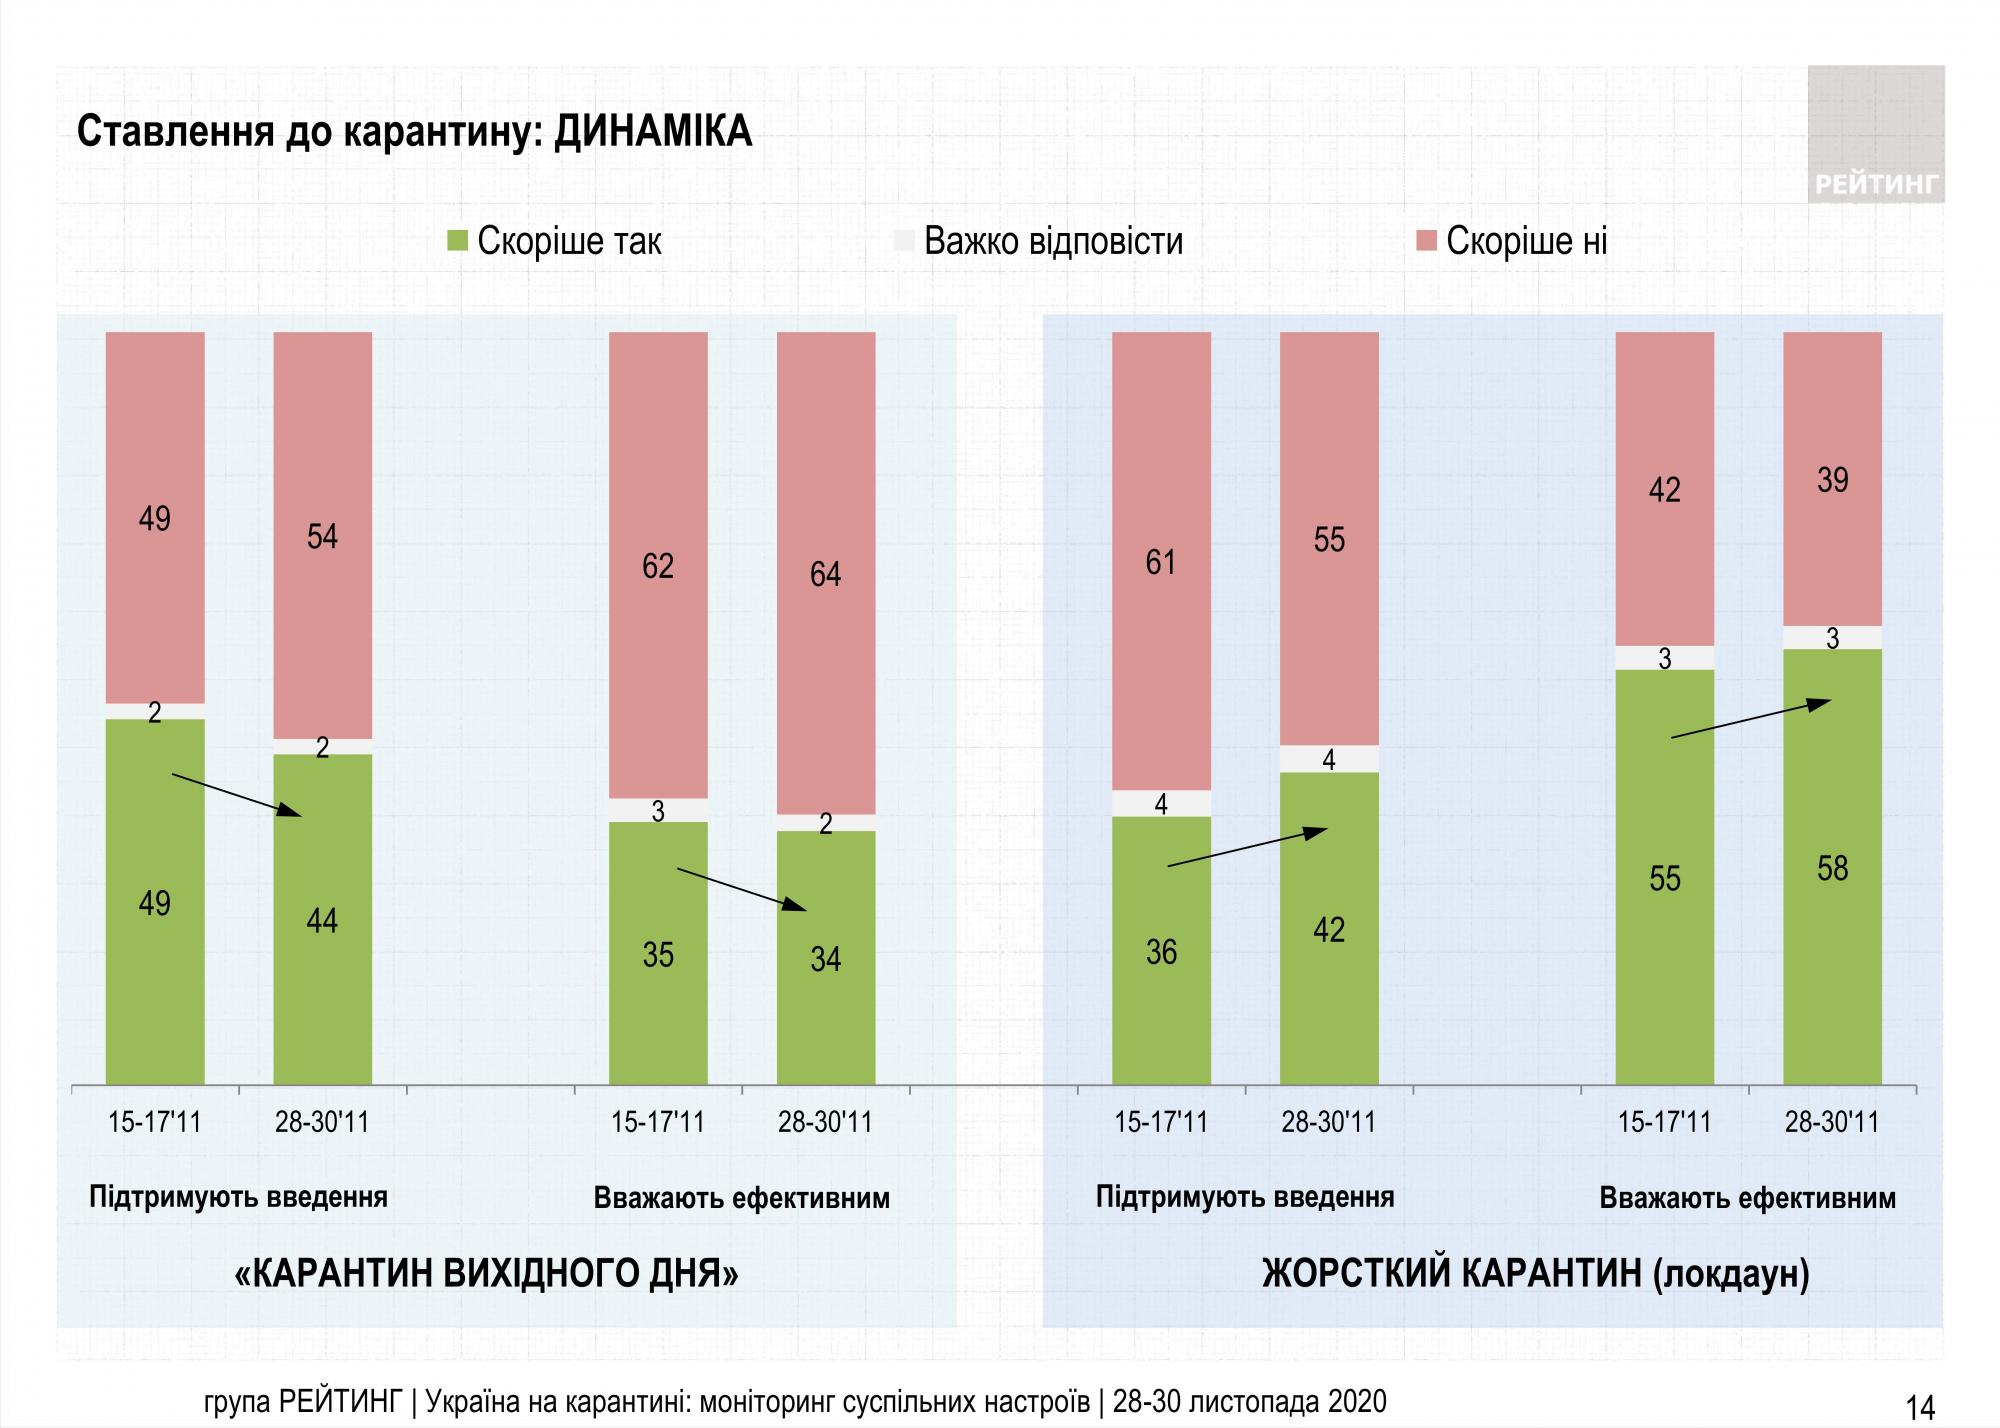 Поддержка локдауна среди украинцев выросла, но большинство по-прежнему против